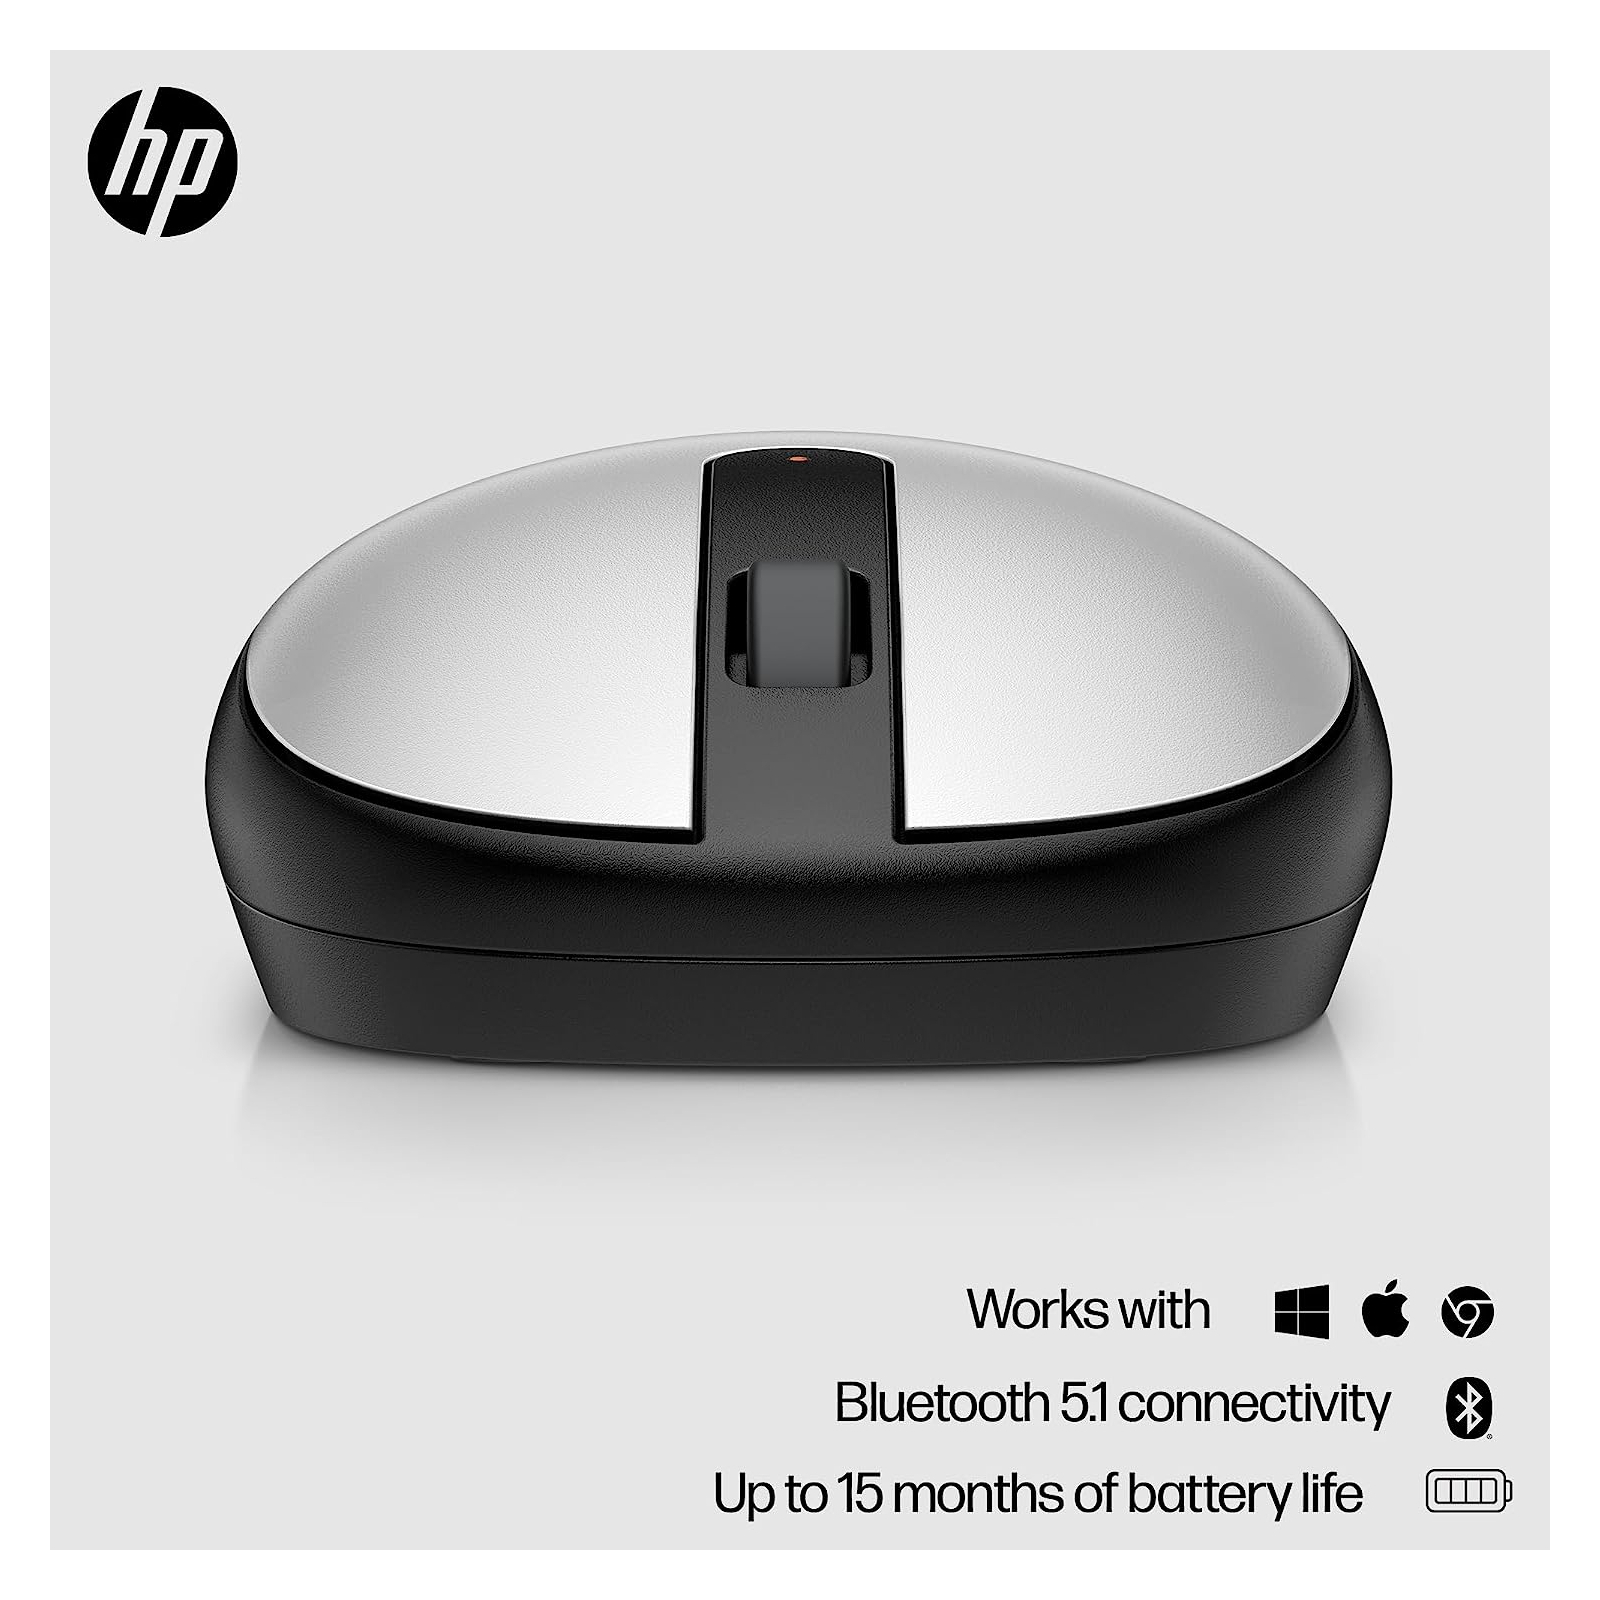 Мышка HP 240 Bluetooth White (793F9AA) изображение 2